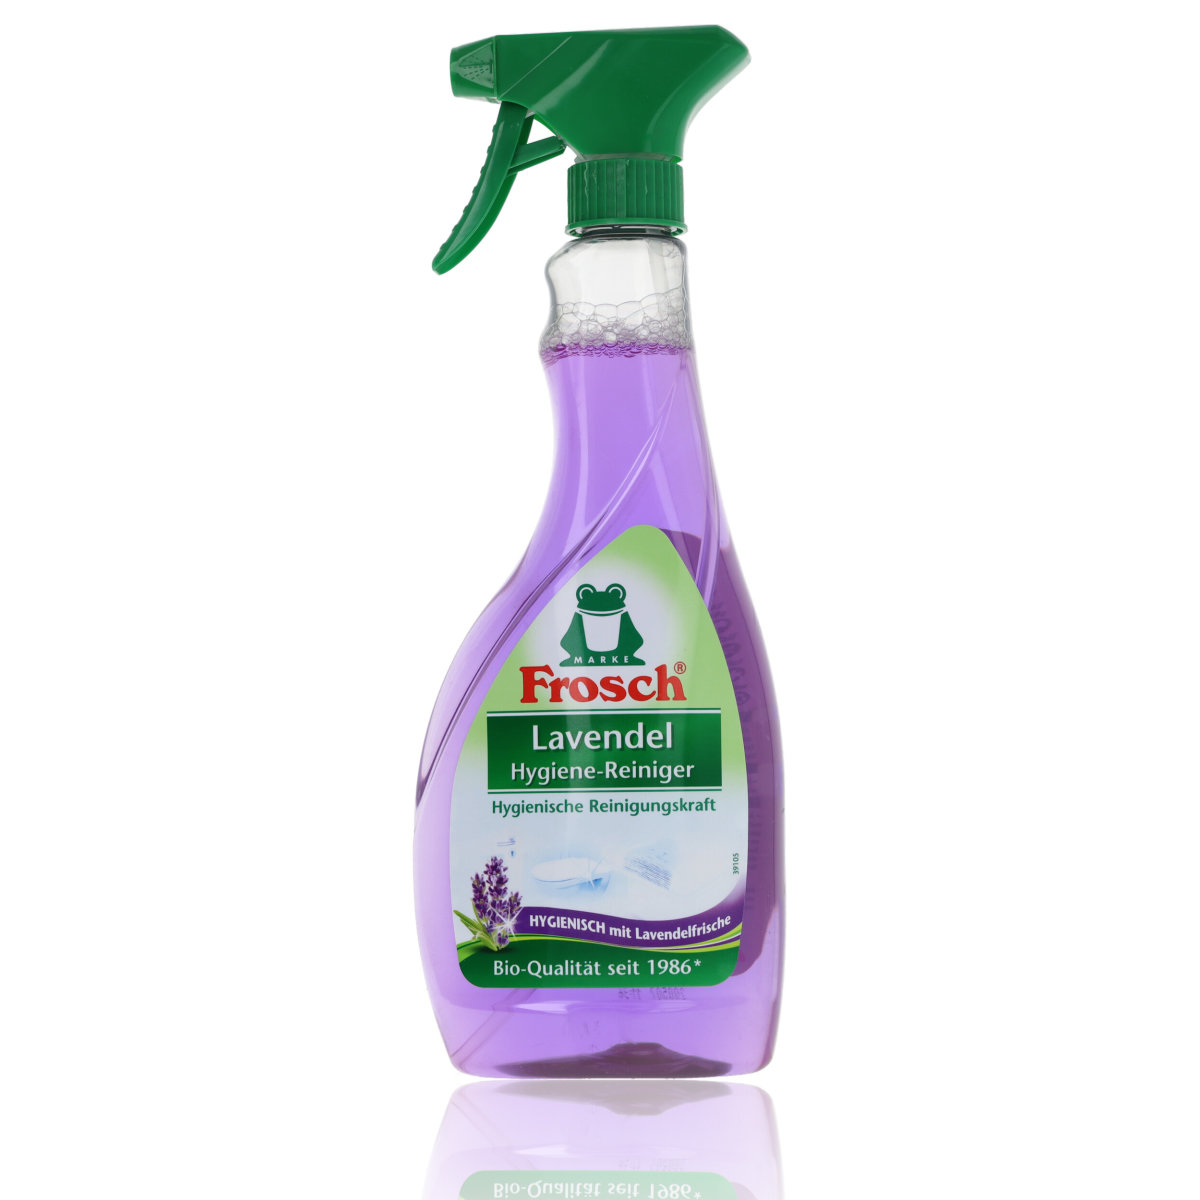 Frosch Lavendel Hygiene-Reiniger 500ml, 3,12 €